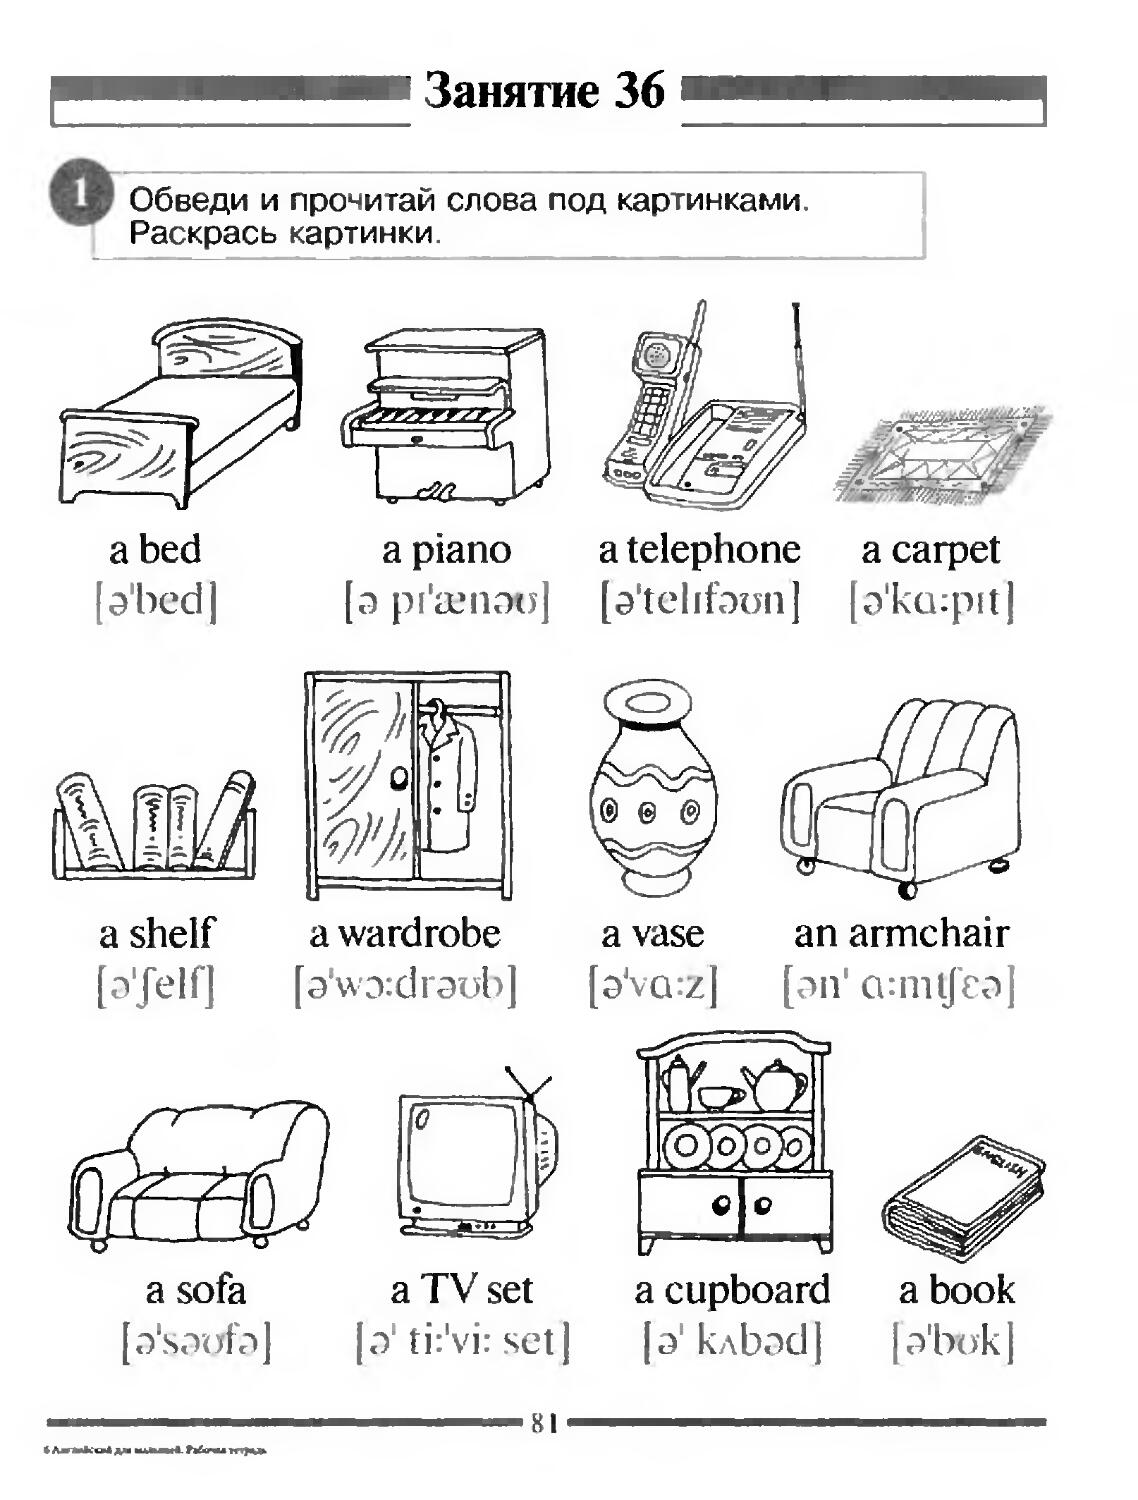 Furniture английский для детей